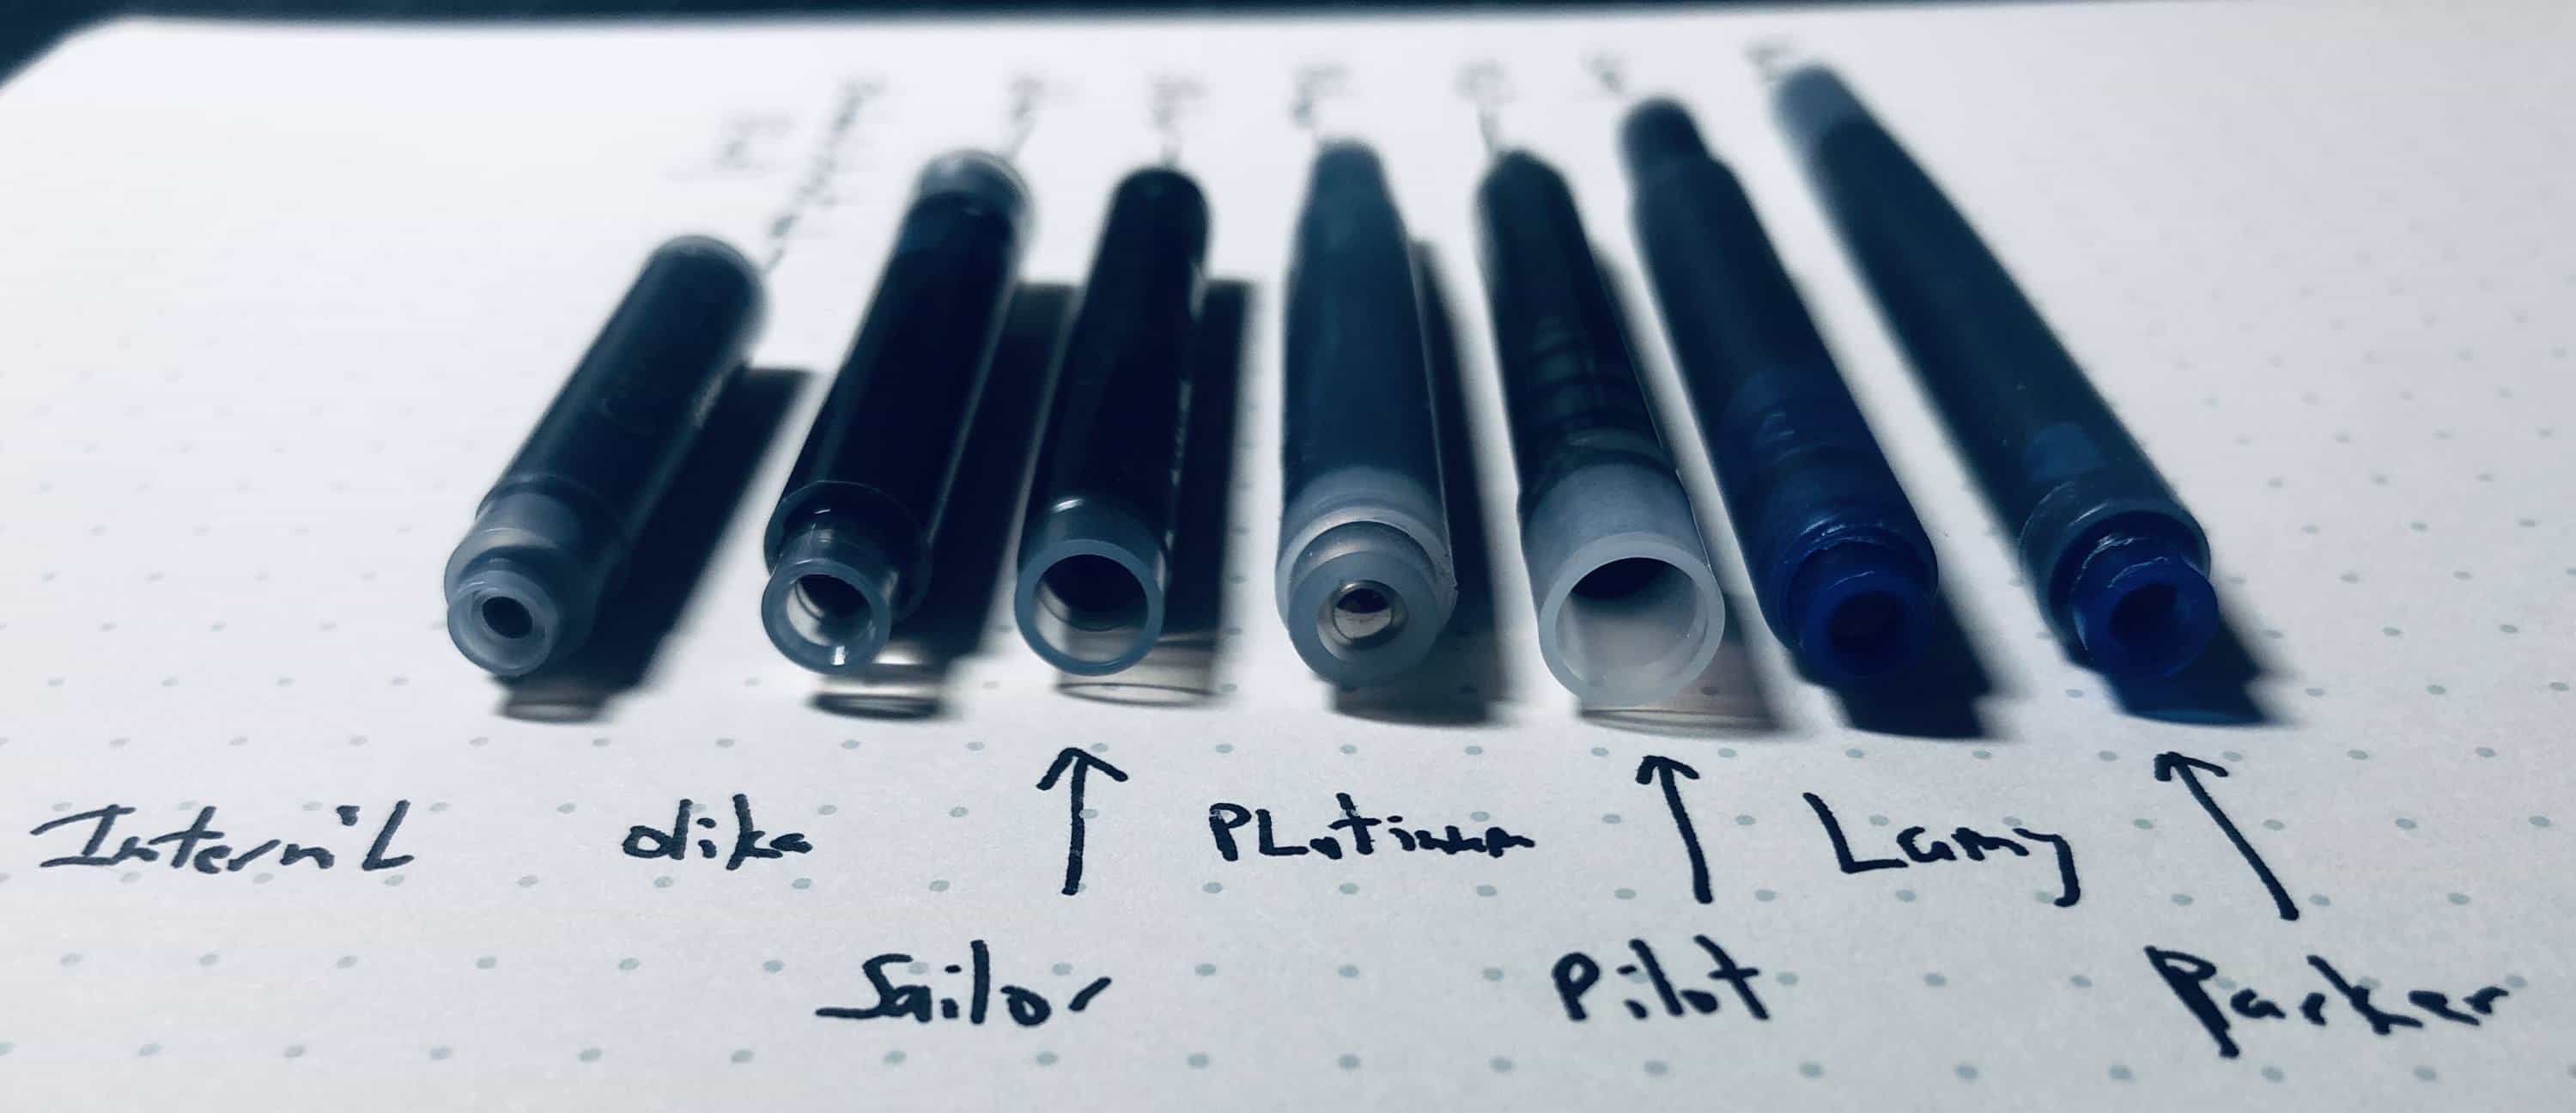 Ink-Cartridges-Side.jpg